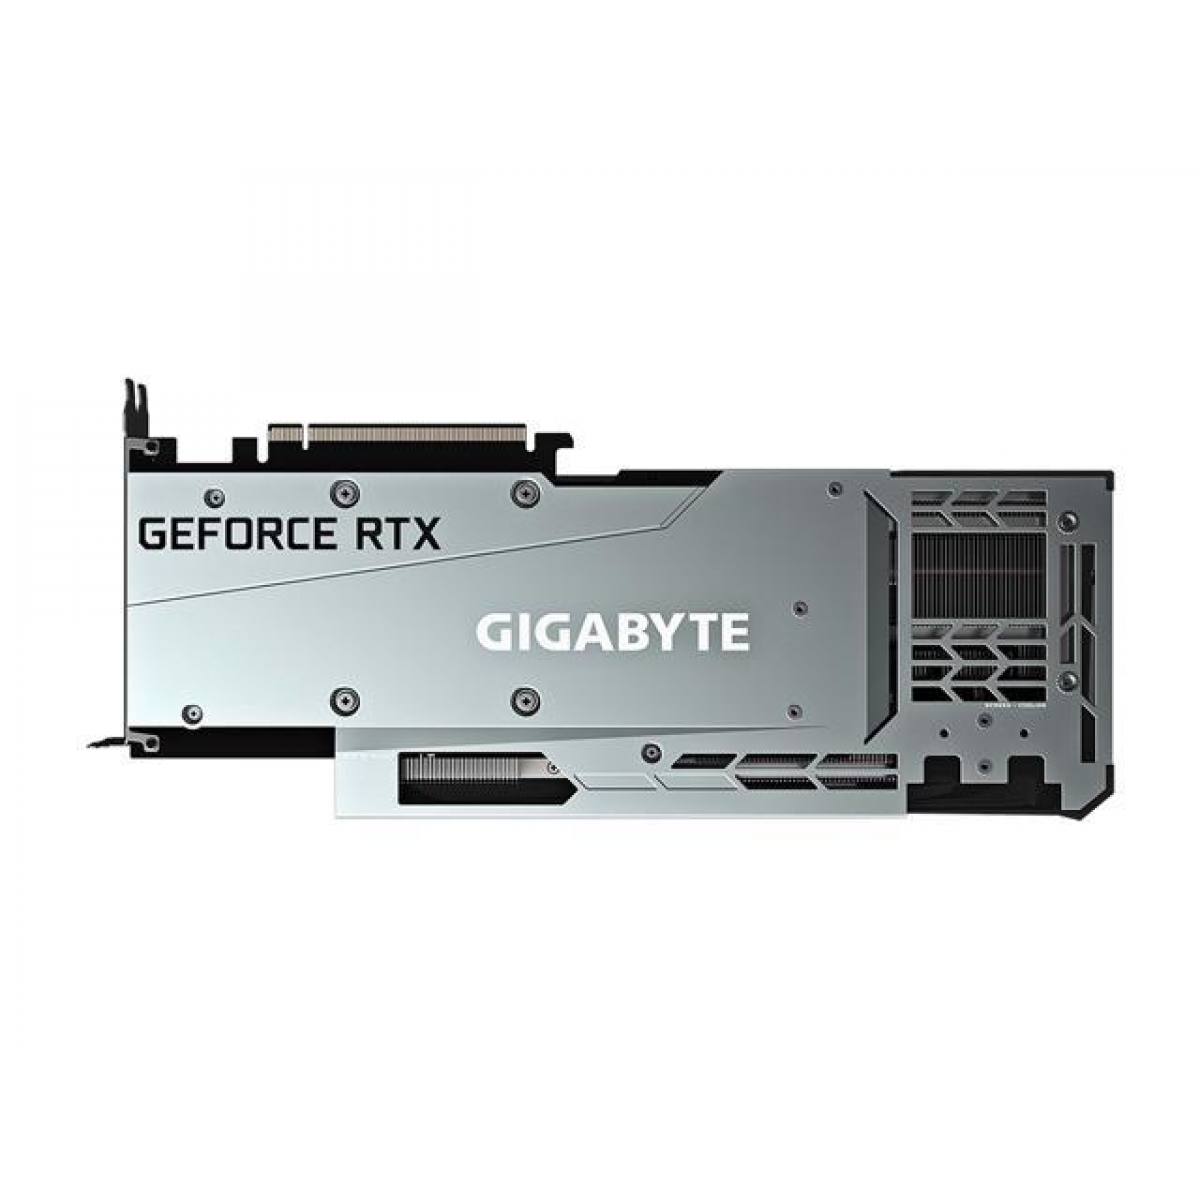 GIGABYTE GeForce RTX 3080 GAMING OC 12G